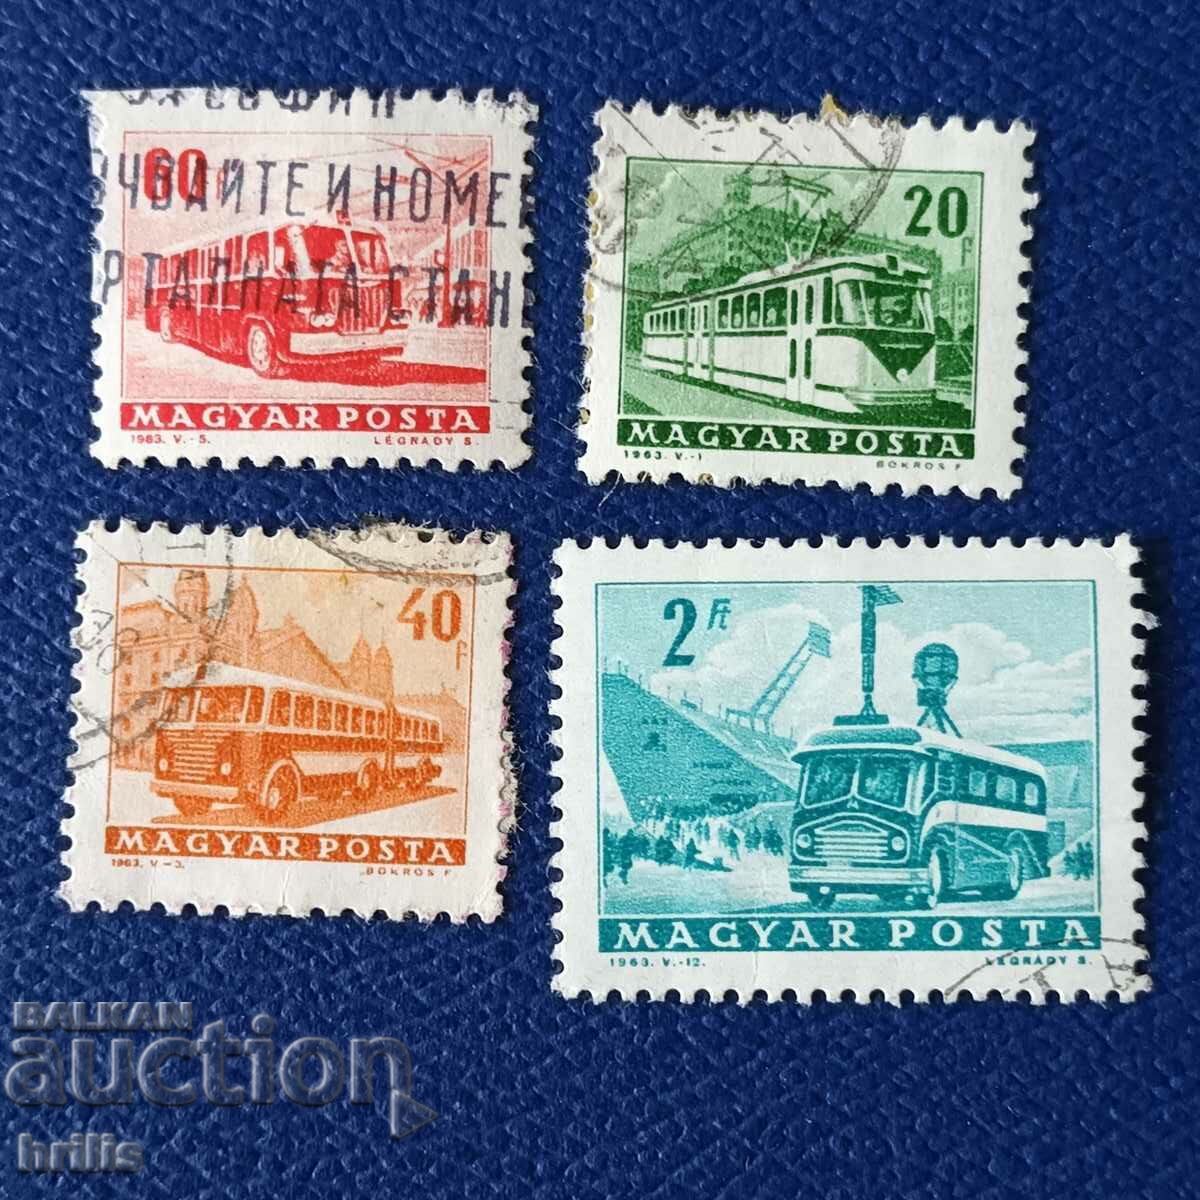 UNGARIA 1963 - TRANSPORT